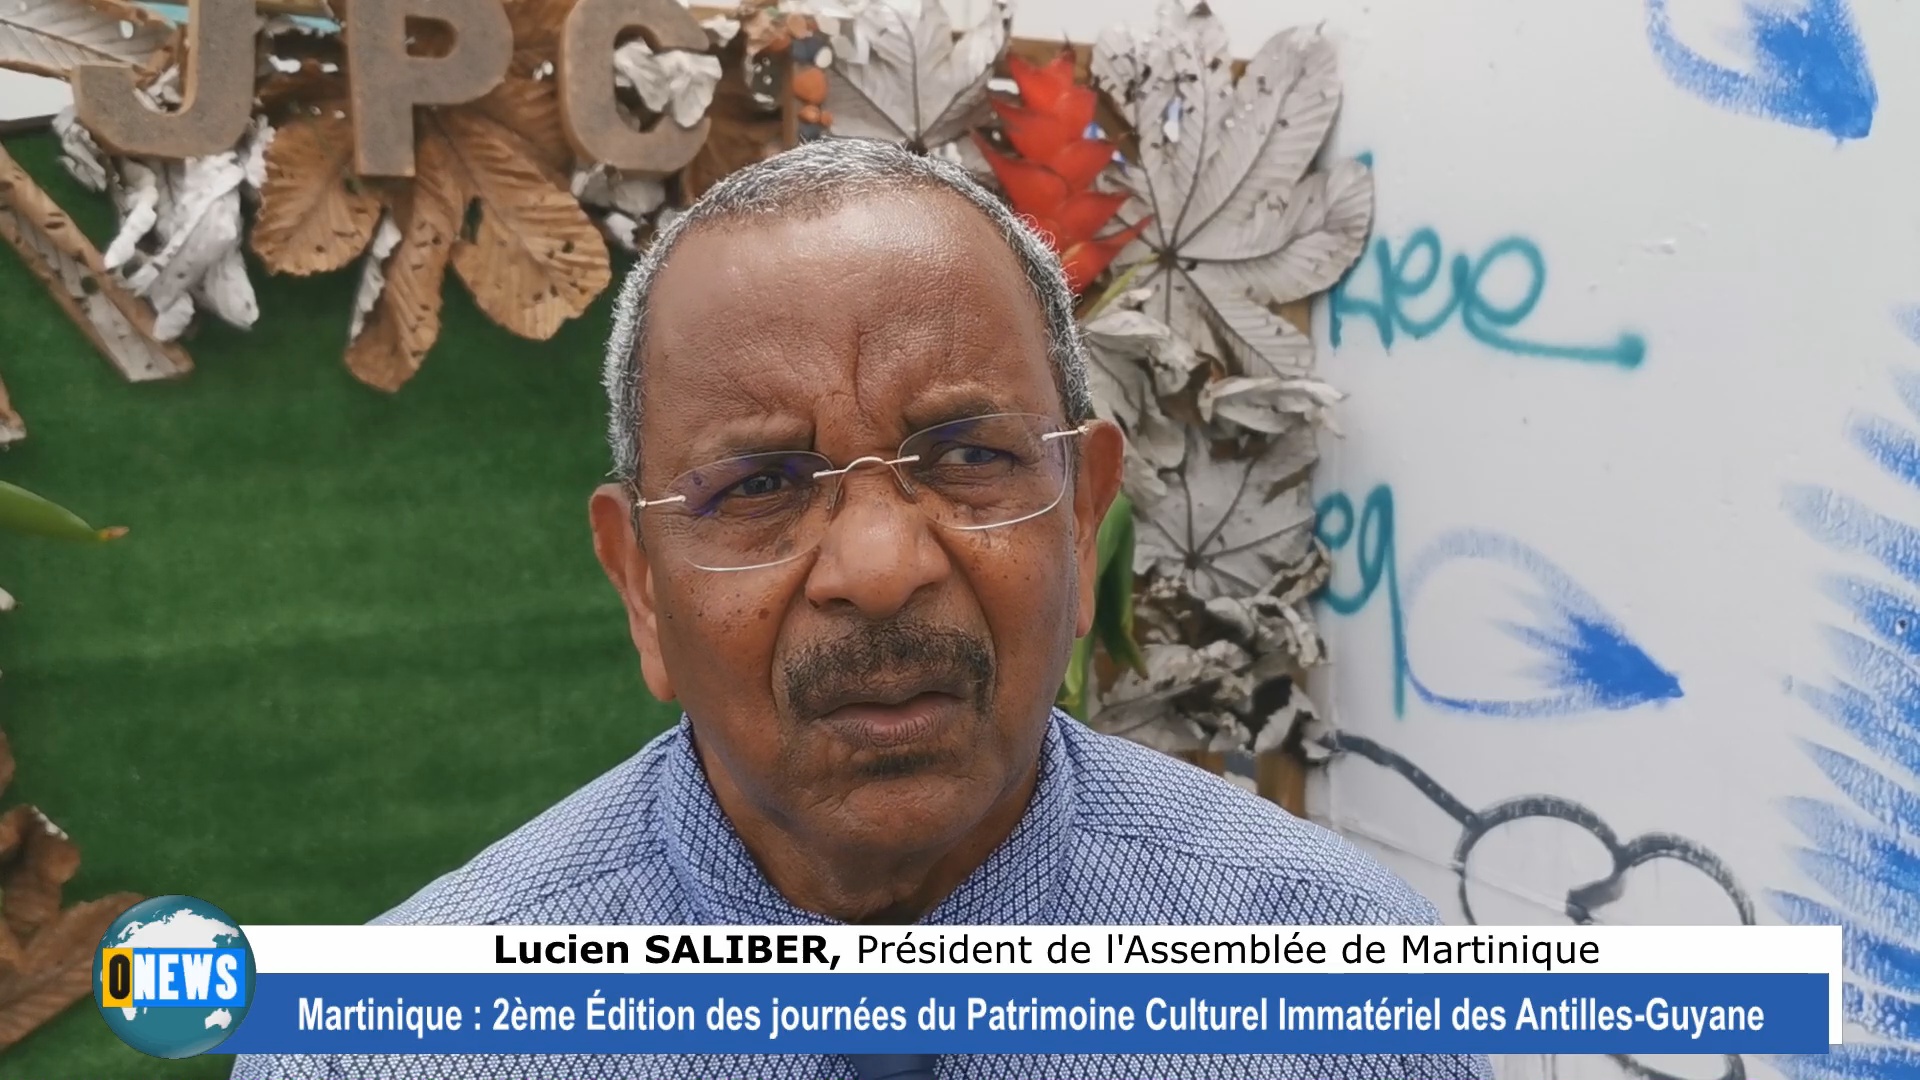 [Vidéo] Martinique 2ème édition des journées du Patrimoine culturel et immatériel des Antilles Guyane